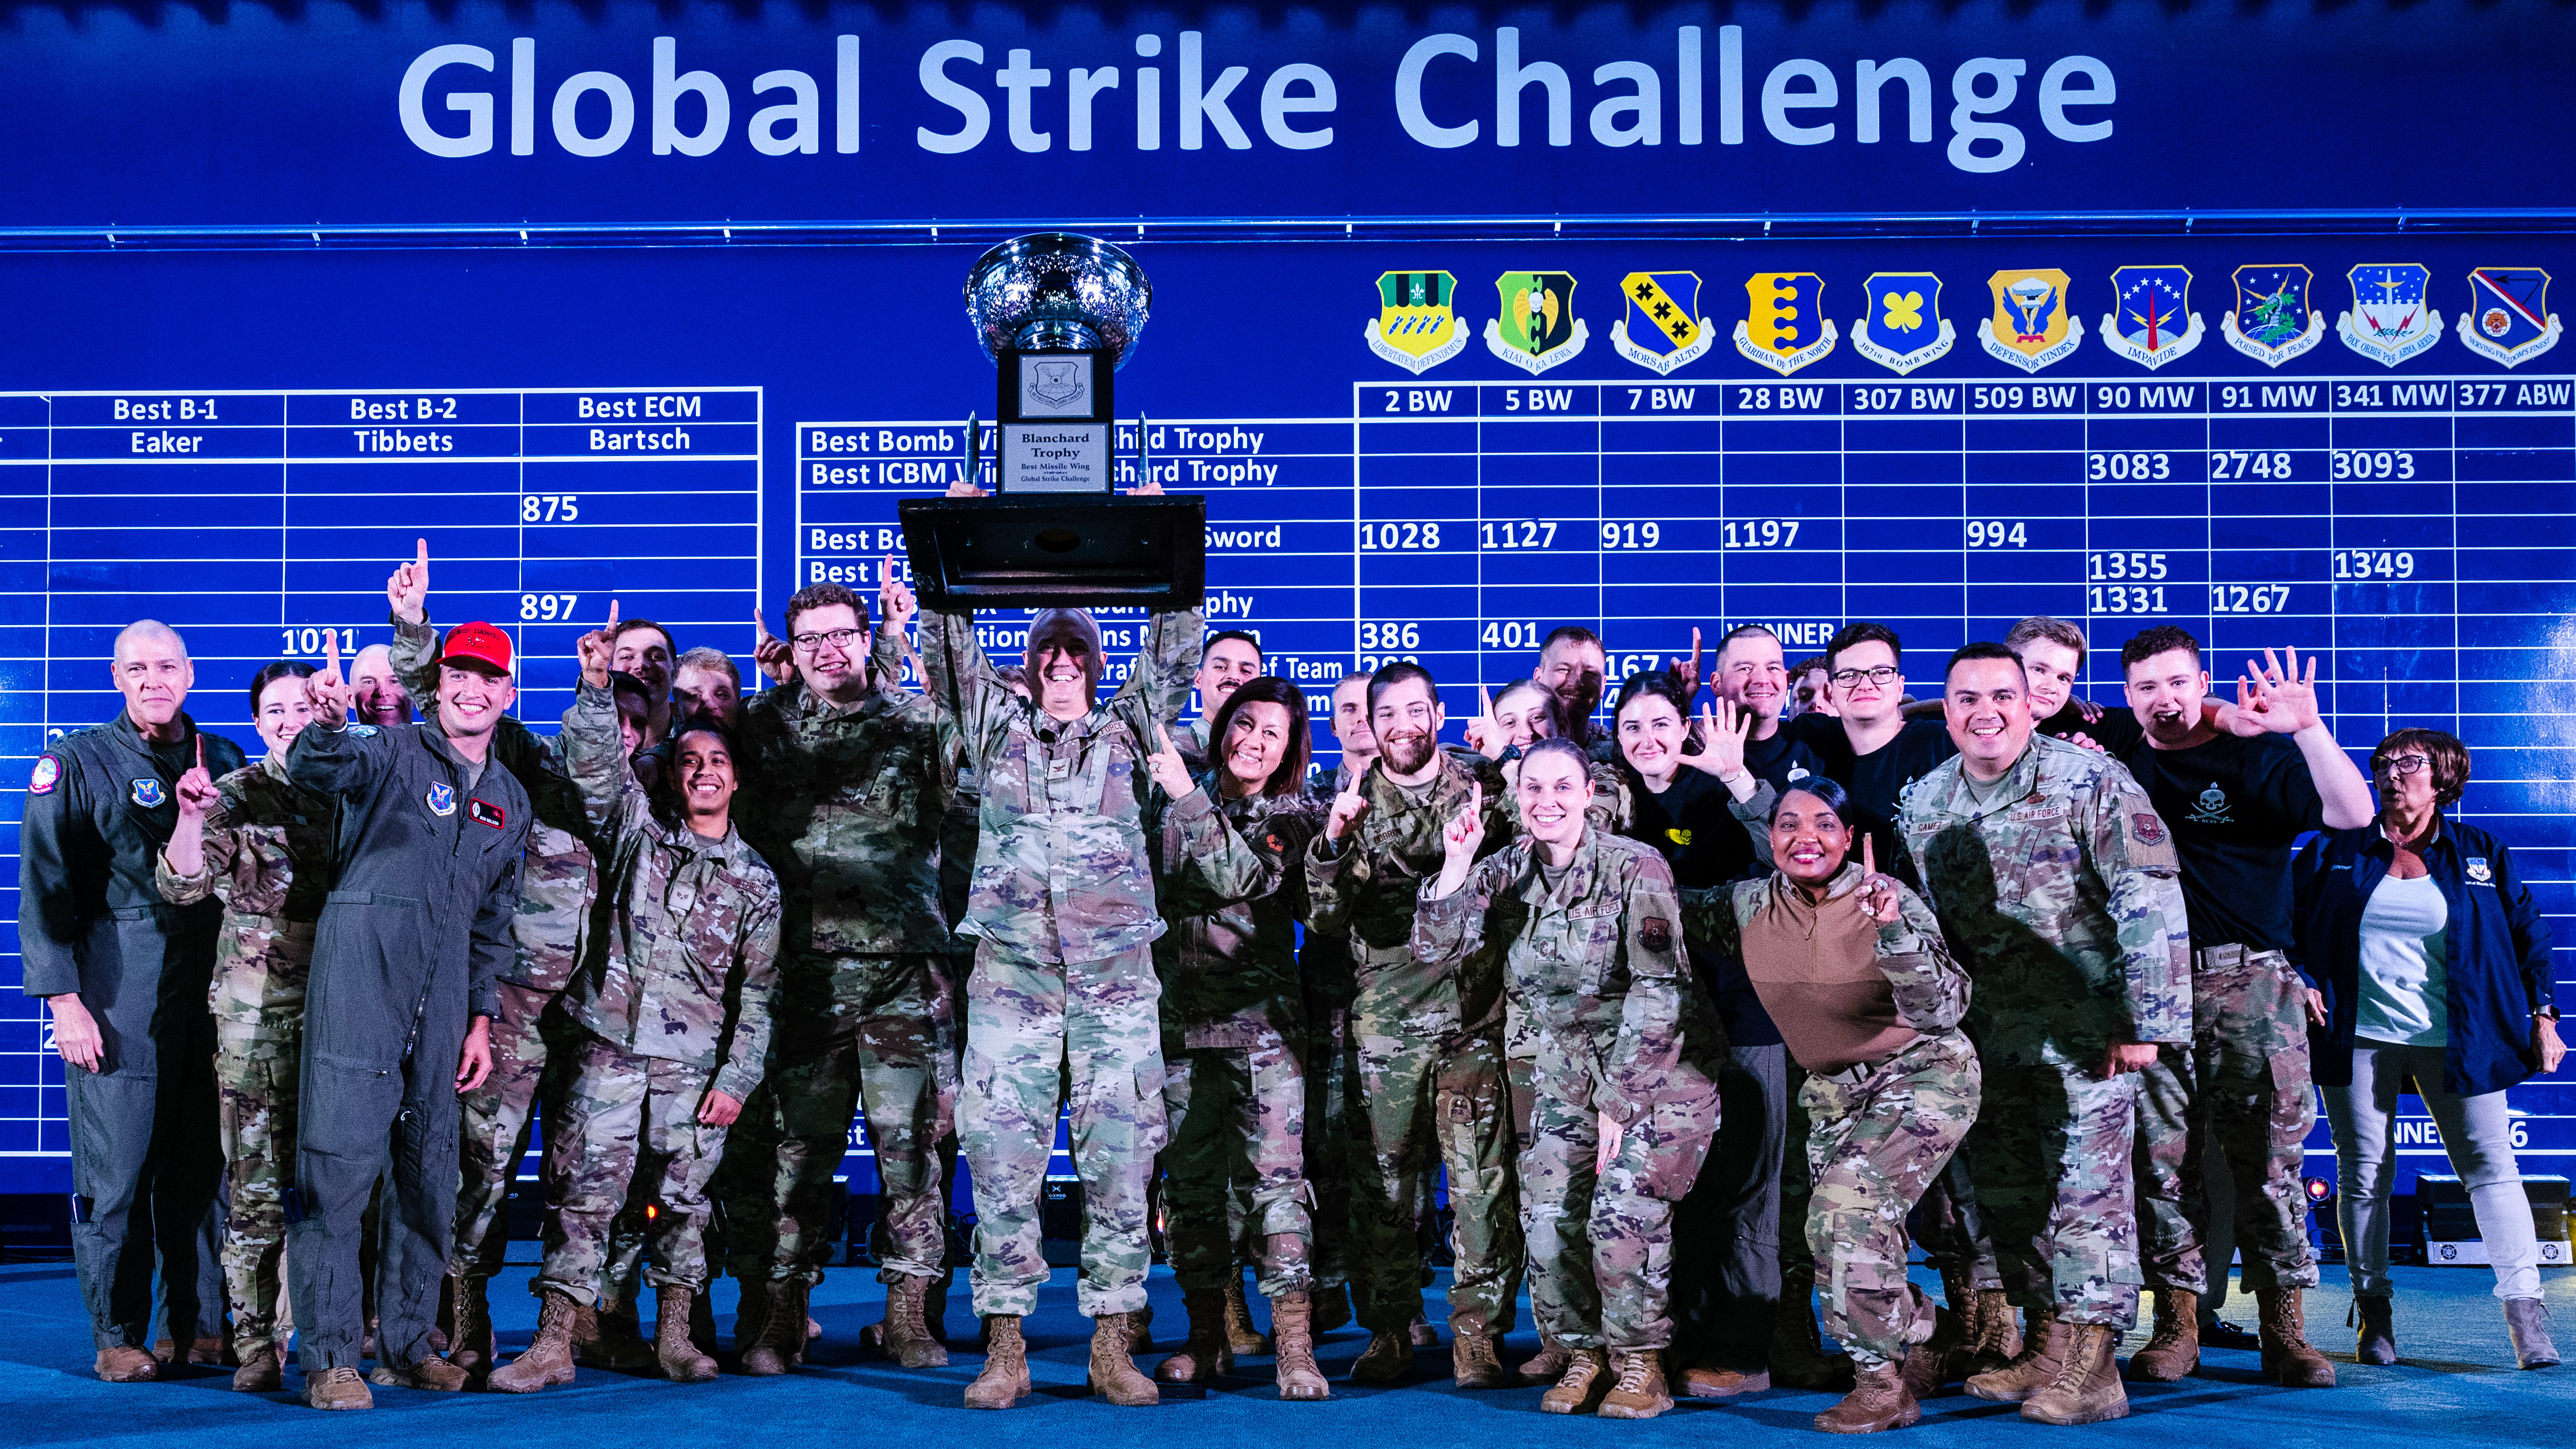 Global Strike Challenge 2023 - 2nd Bomb Wing > U.S. Strategic